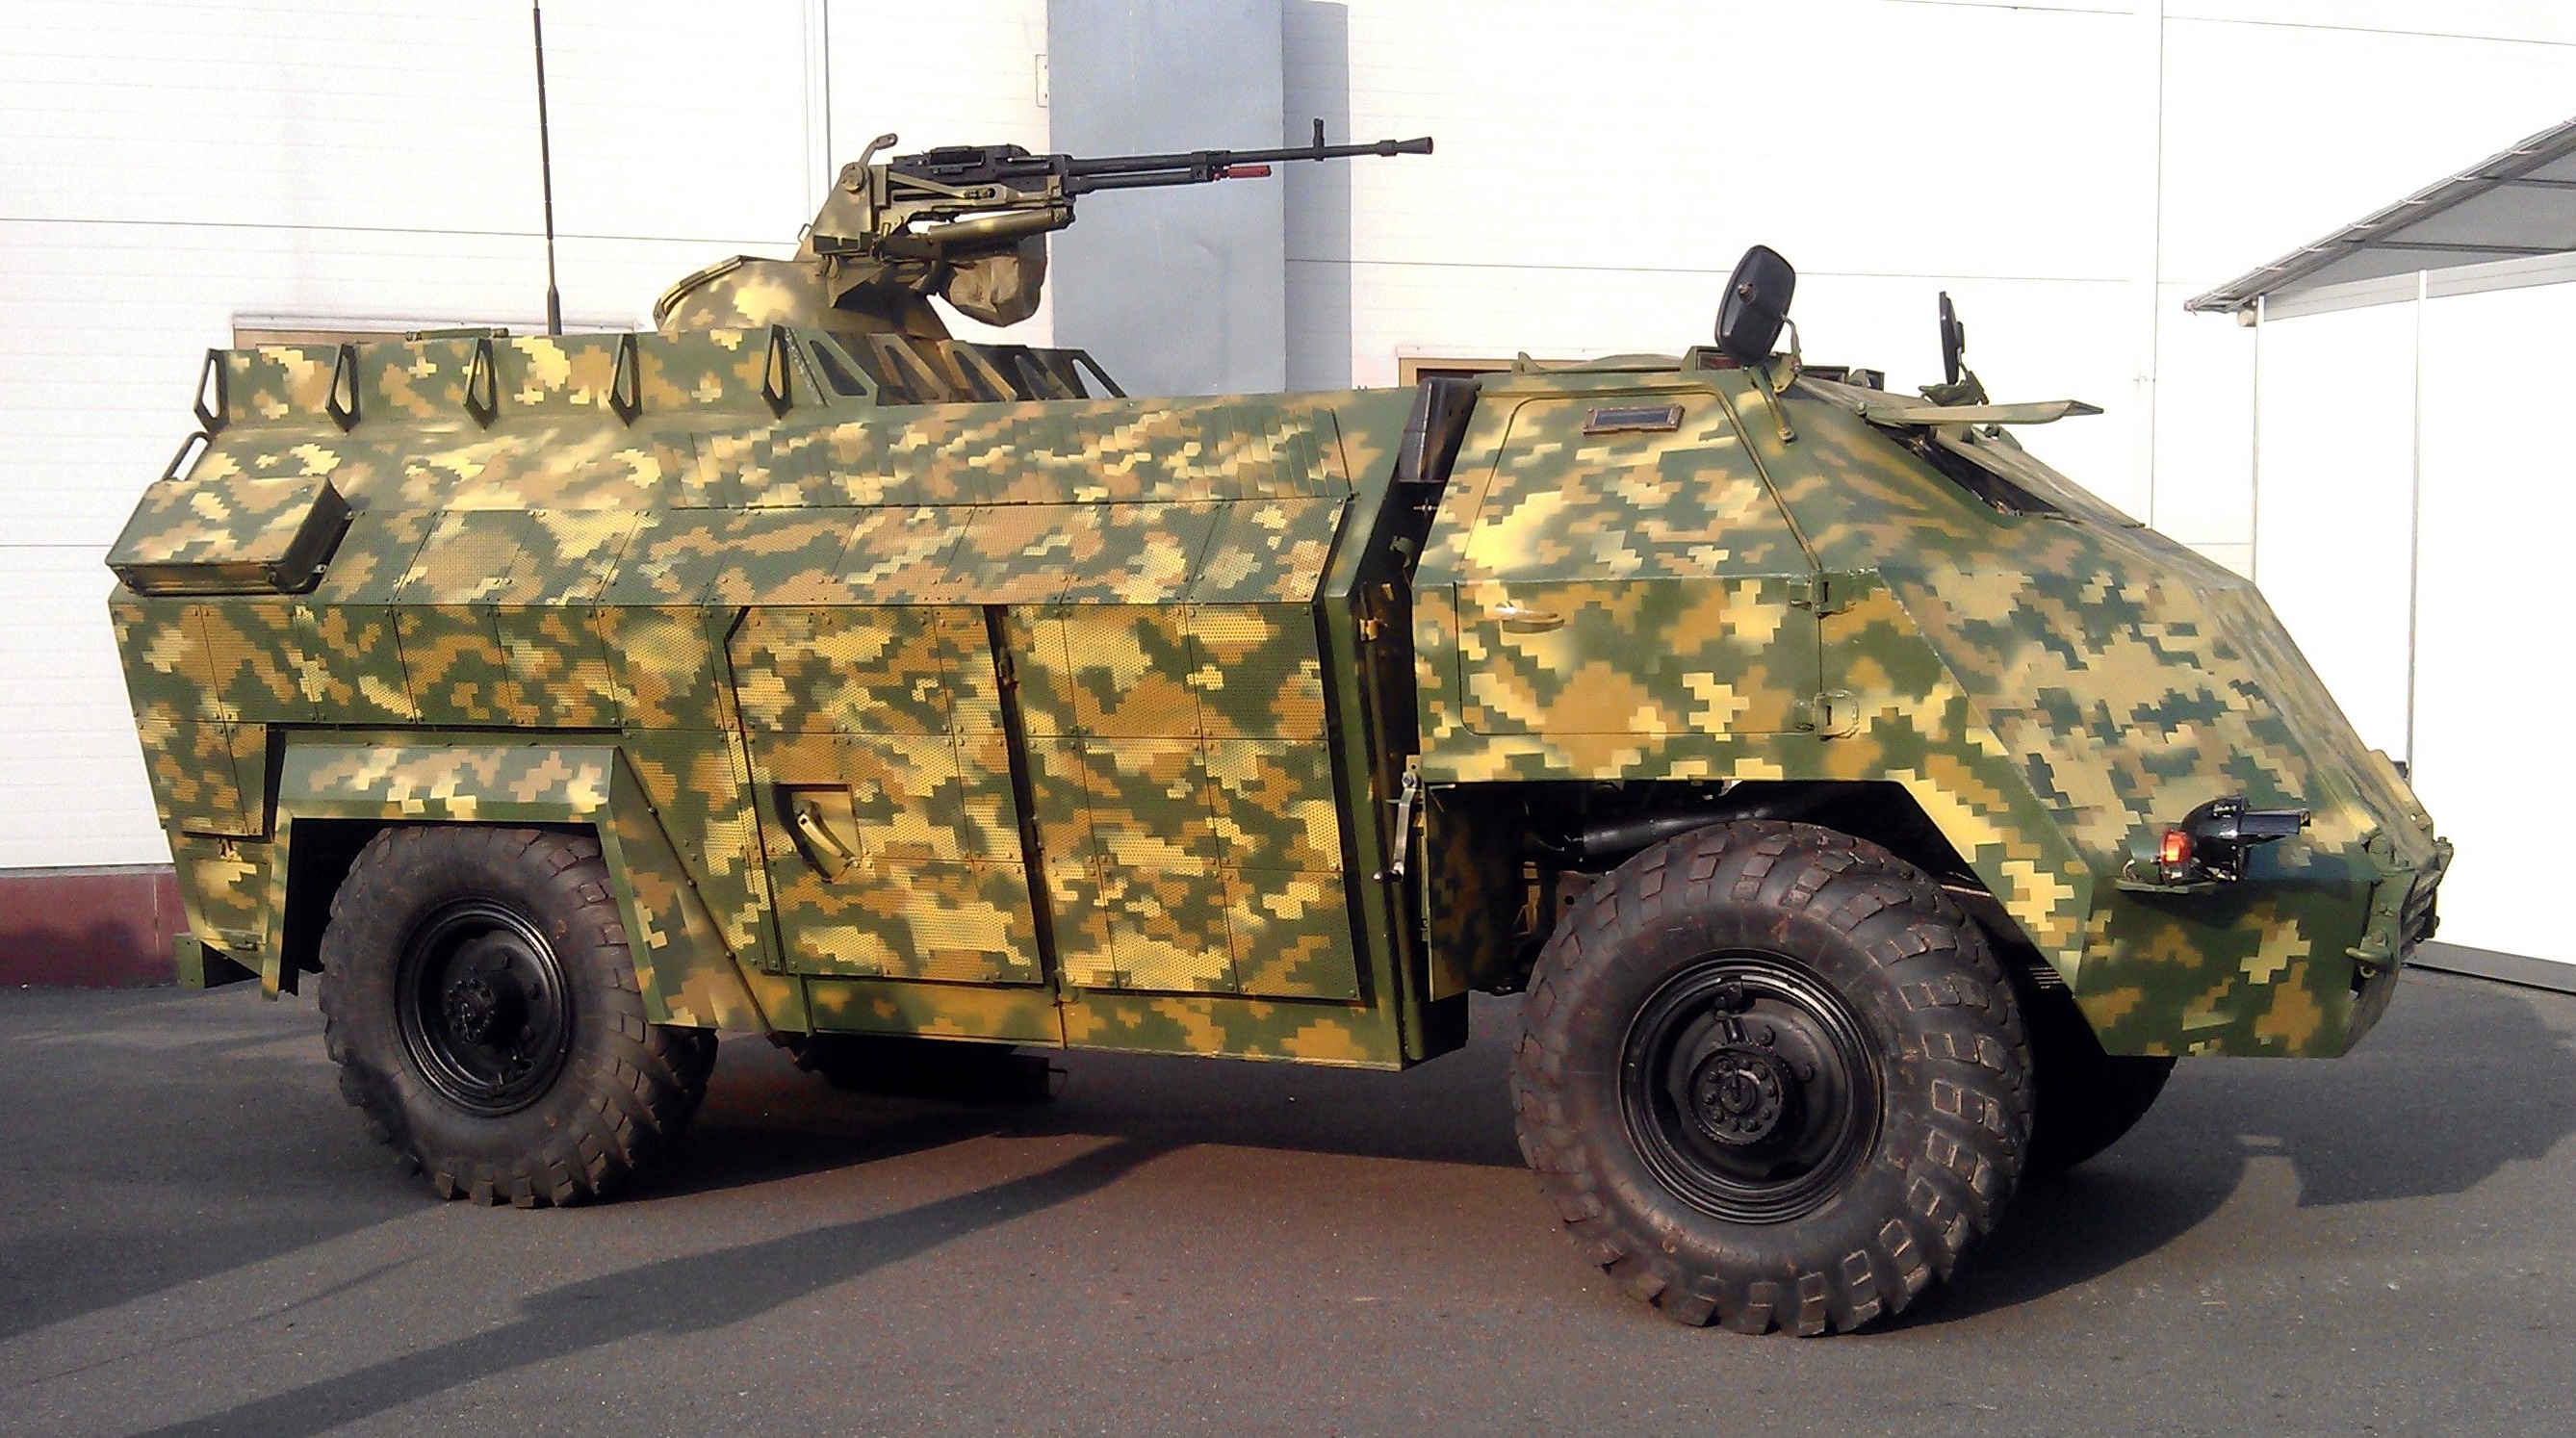 Les forces armées ukrainiennes ont montré une "arme secrète" dans la guerre contre la Russie - un véhicule blindé ukrainien unique "Gadfly", disponible en un seul exemplaire